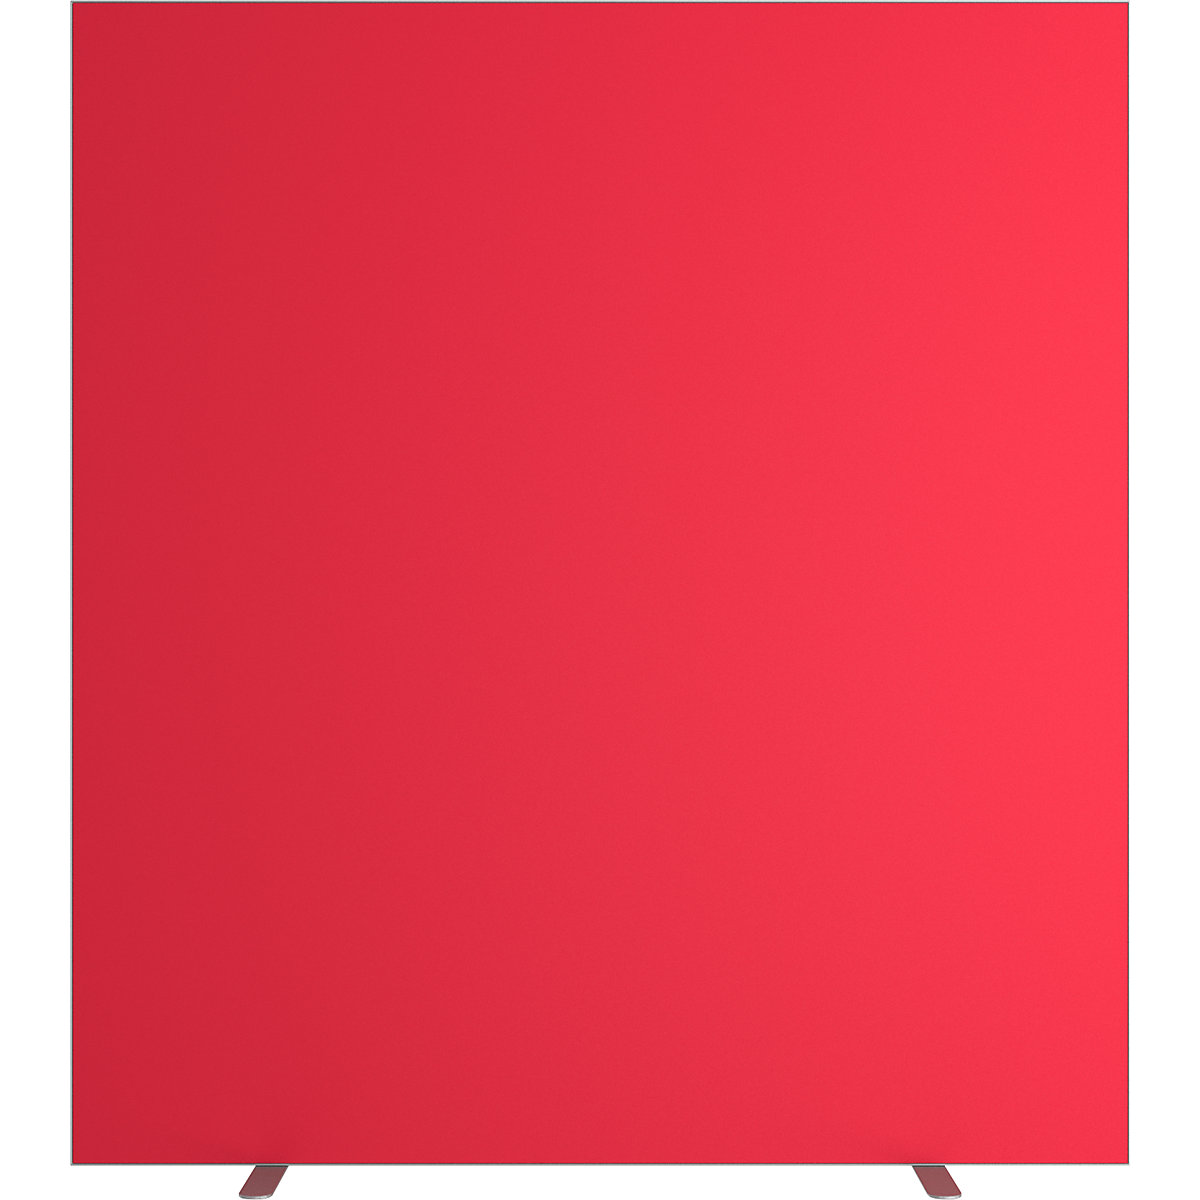 Predelna stena easyScreen, enobarvna, rdeče barve, širina 1600 mm